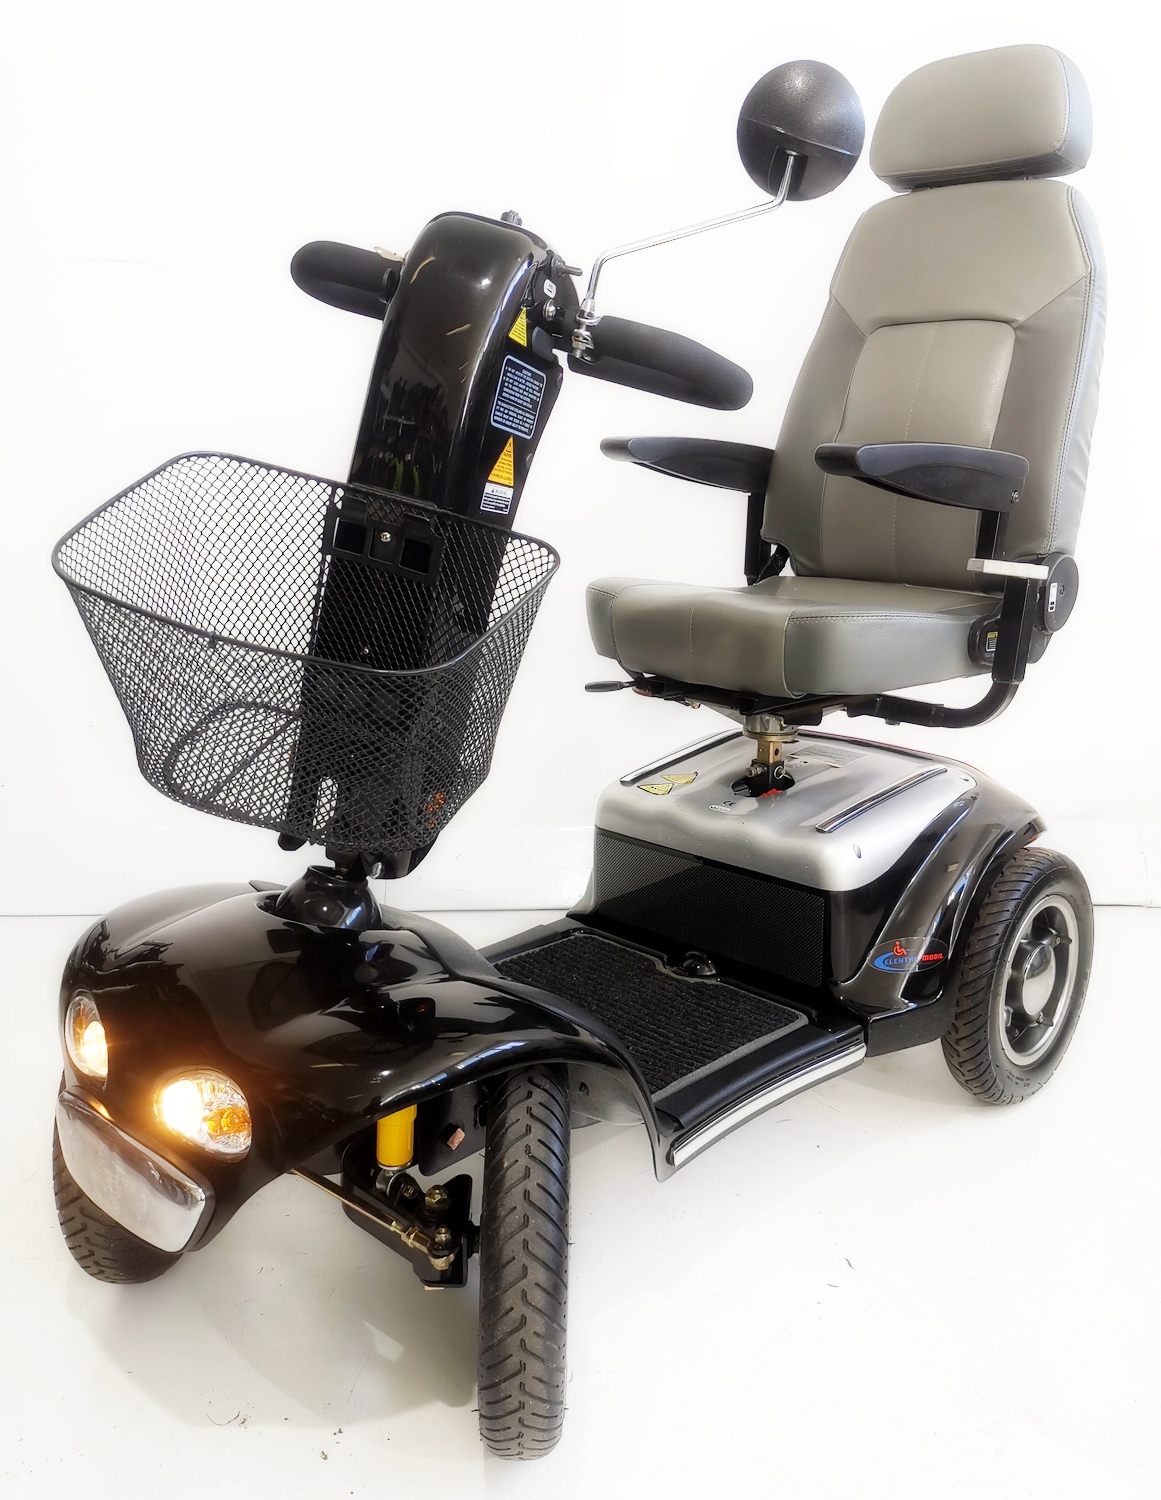 jupiter 4 fast skuter inwalidzki elektryczny